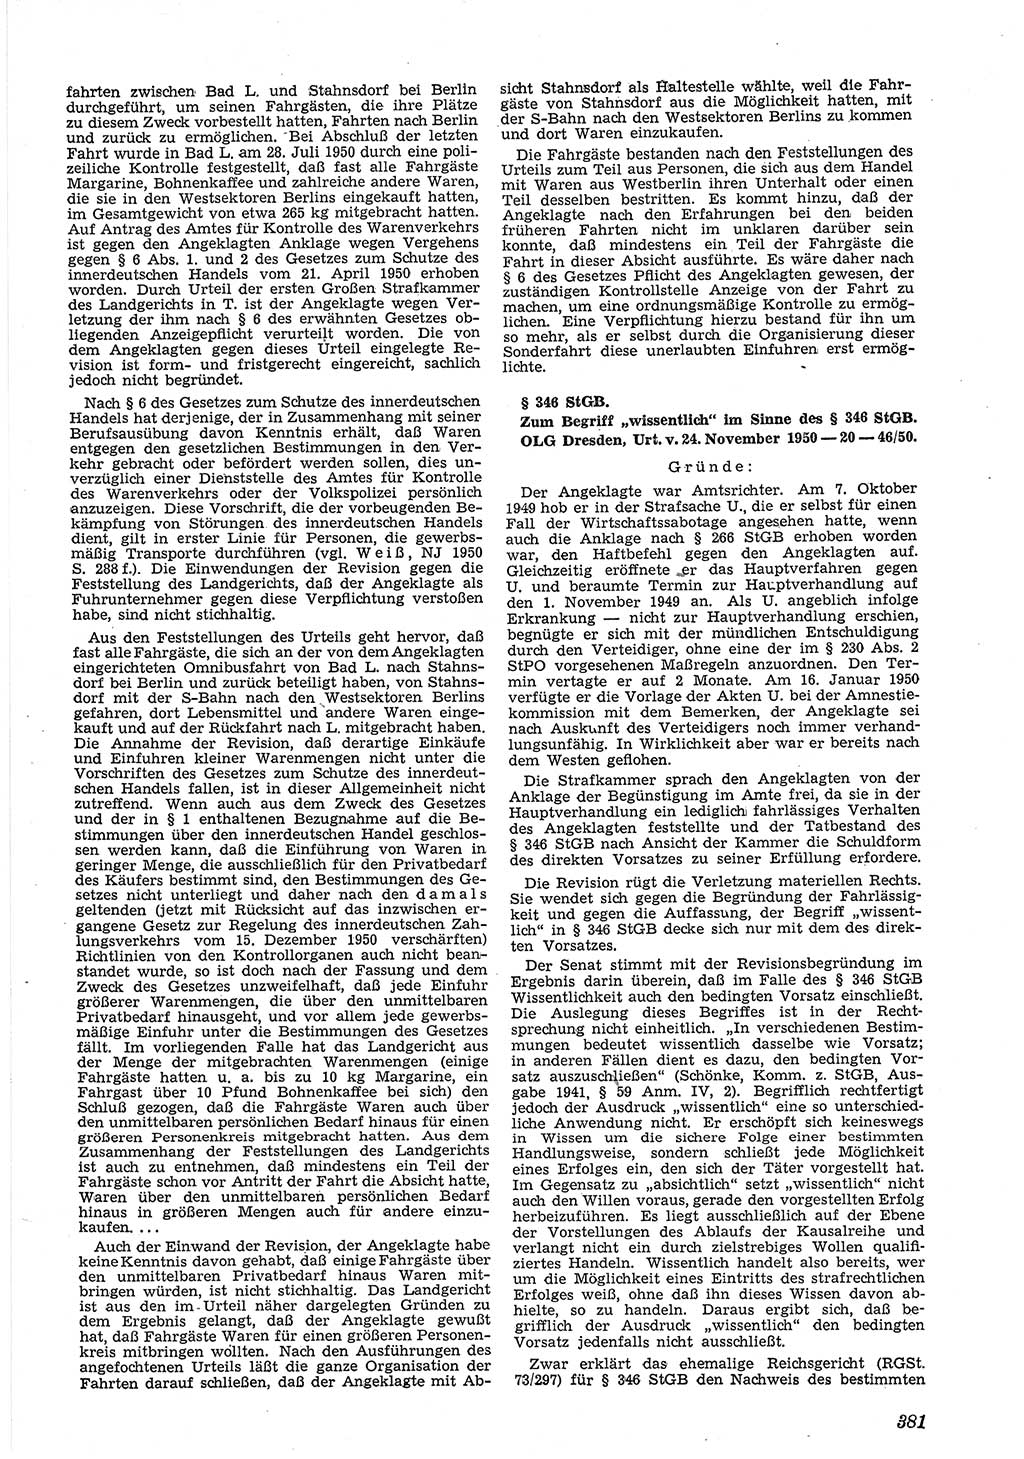 Neue Justiz (NJ), Zeitschrift für Recht und Rechtswissenschaft [Deutsche Demokratische Republik (DDR)], 5. Jahrgang 1951, Seite 381 (NJ DDR 1951, S. 381)